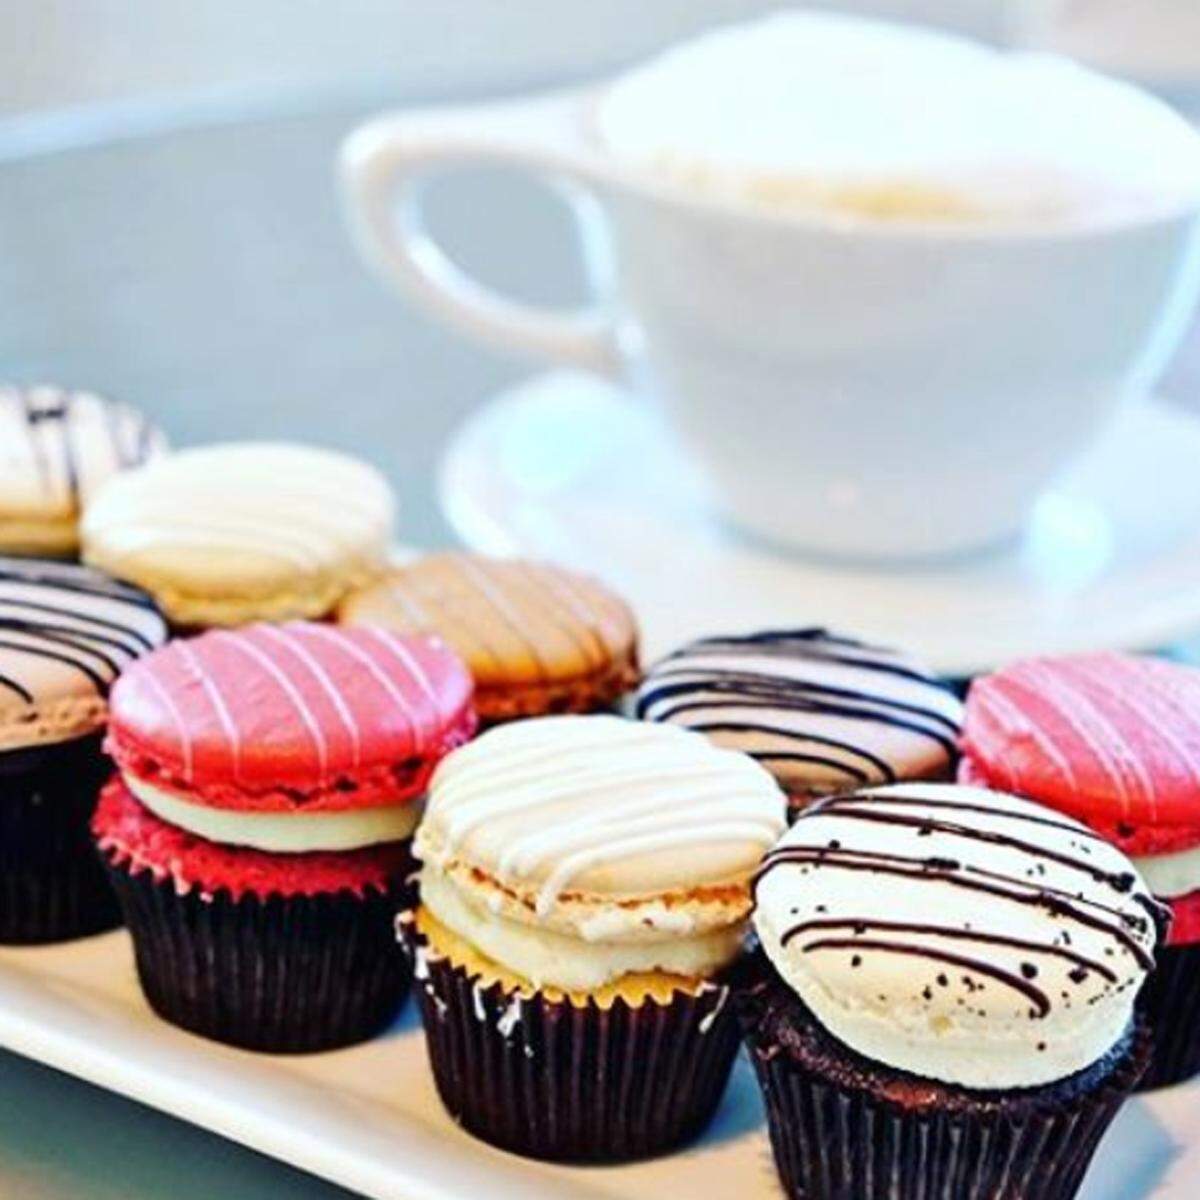 Cupcakes und Macarons sind wahrscheinlich die Desserts, die am öftesten fotografiert werden. Die Bäckerei Baked by Melissa aus New York hat sich auf diesen Hybrid im Mini-Format spezialisiert.